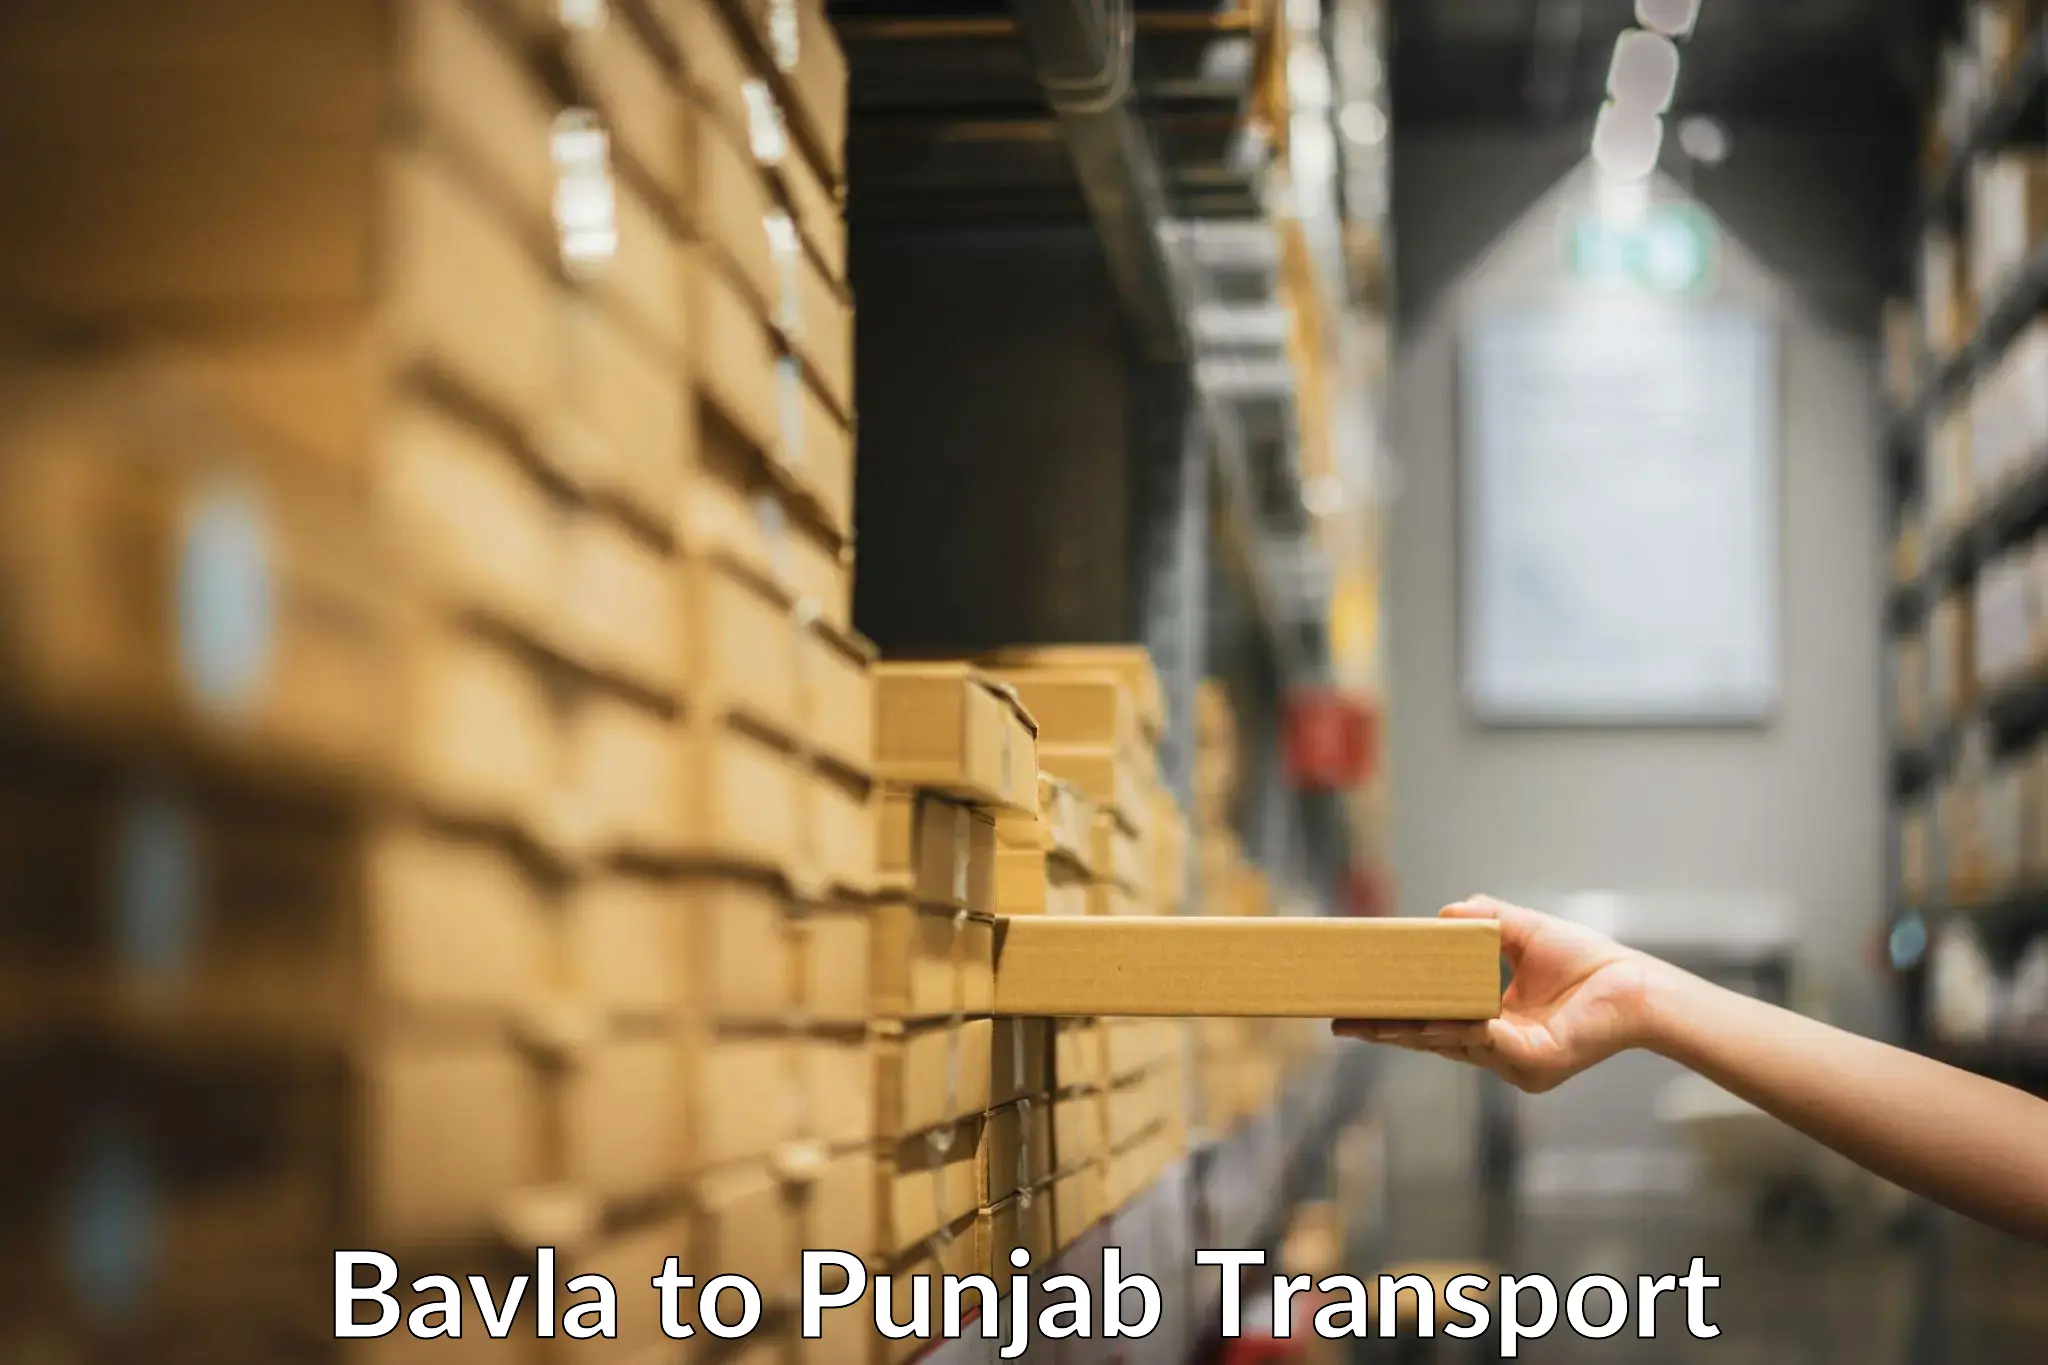 Nearby transport service Bavla to Amritsar